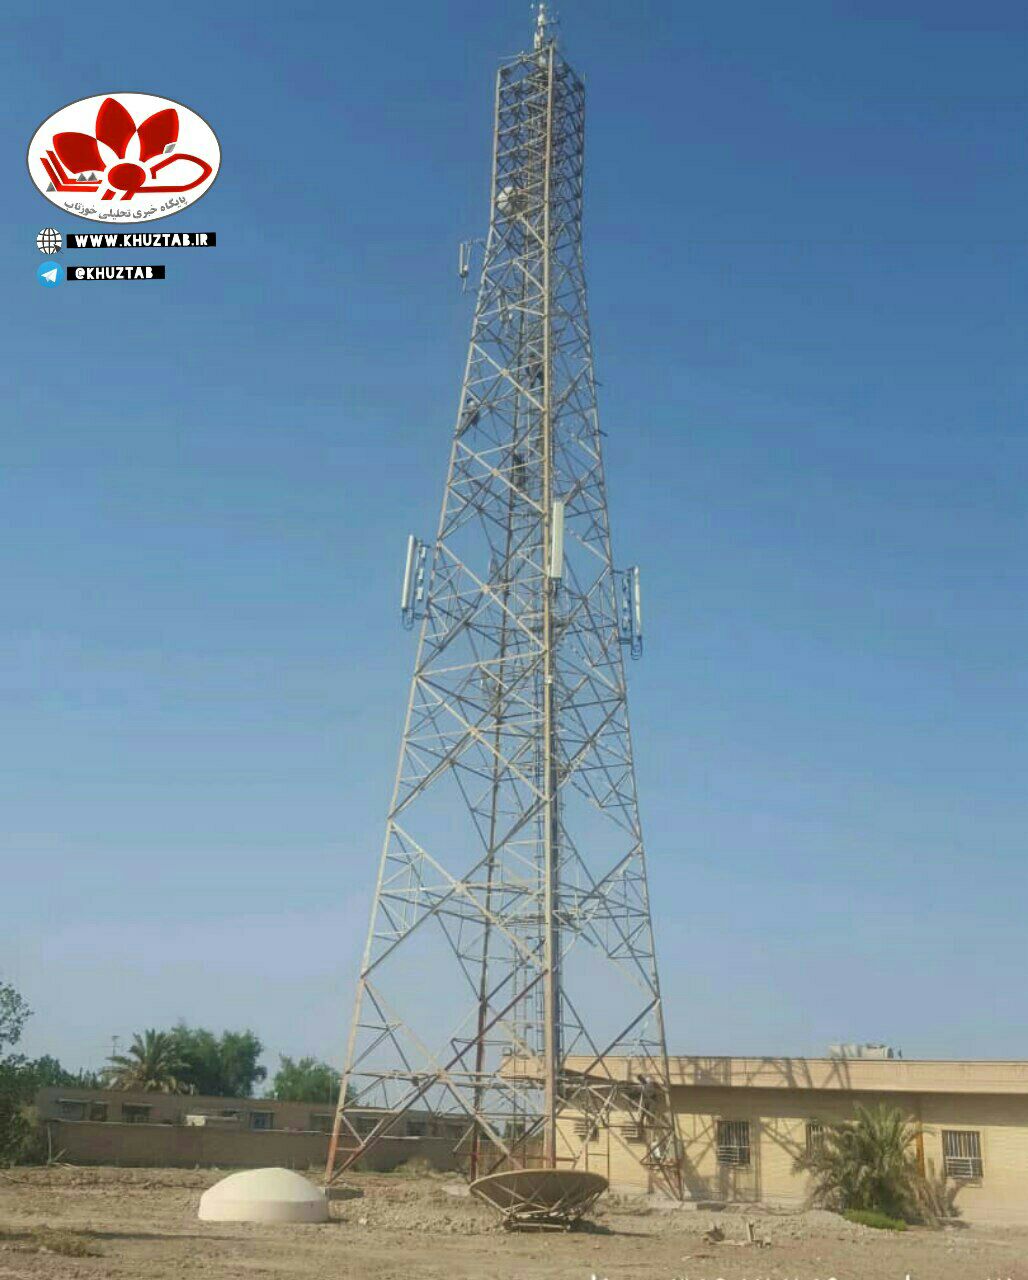 IMG 20200714 164150 585 توسعه شبكه ارتباطی با نصب تجهیزات و ارتقا تکنولوژی 19 سایت همراه اول در خوزستان